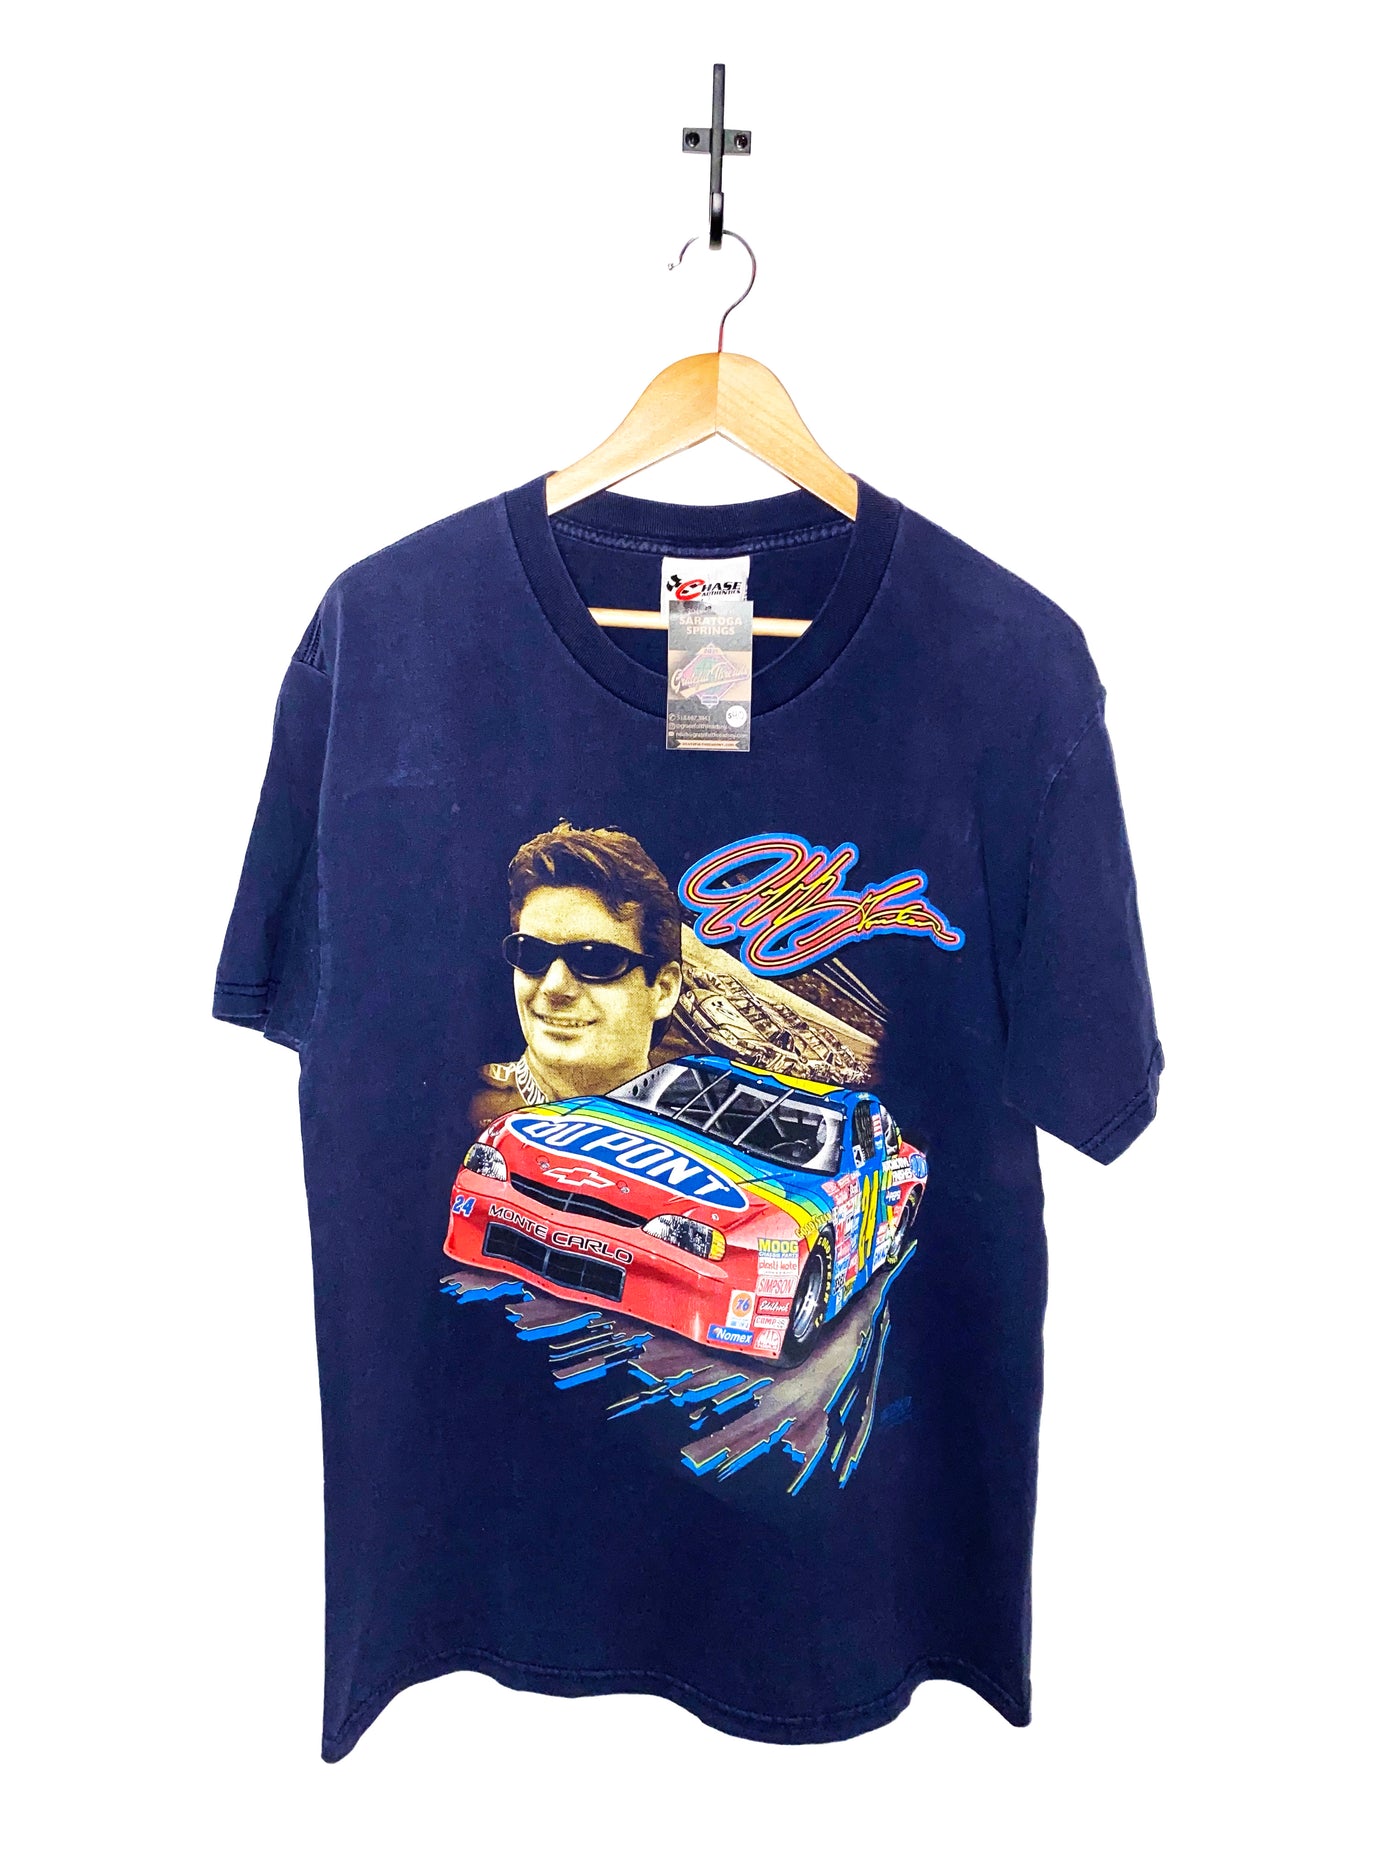 Vintage Jeff Gordon Racing T-Shirt